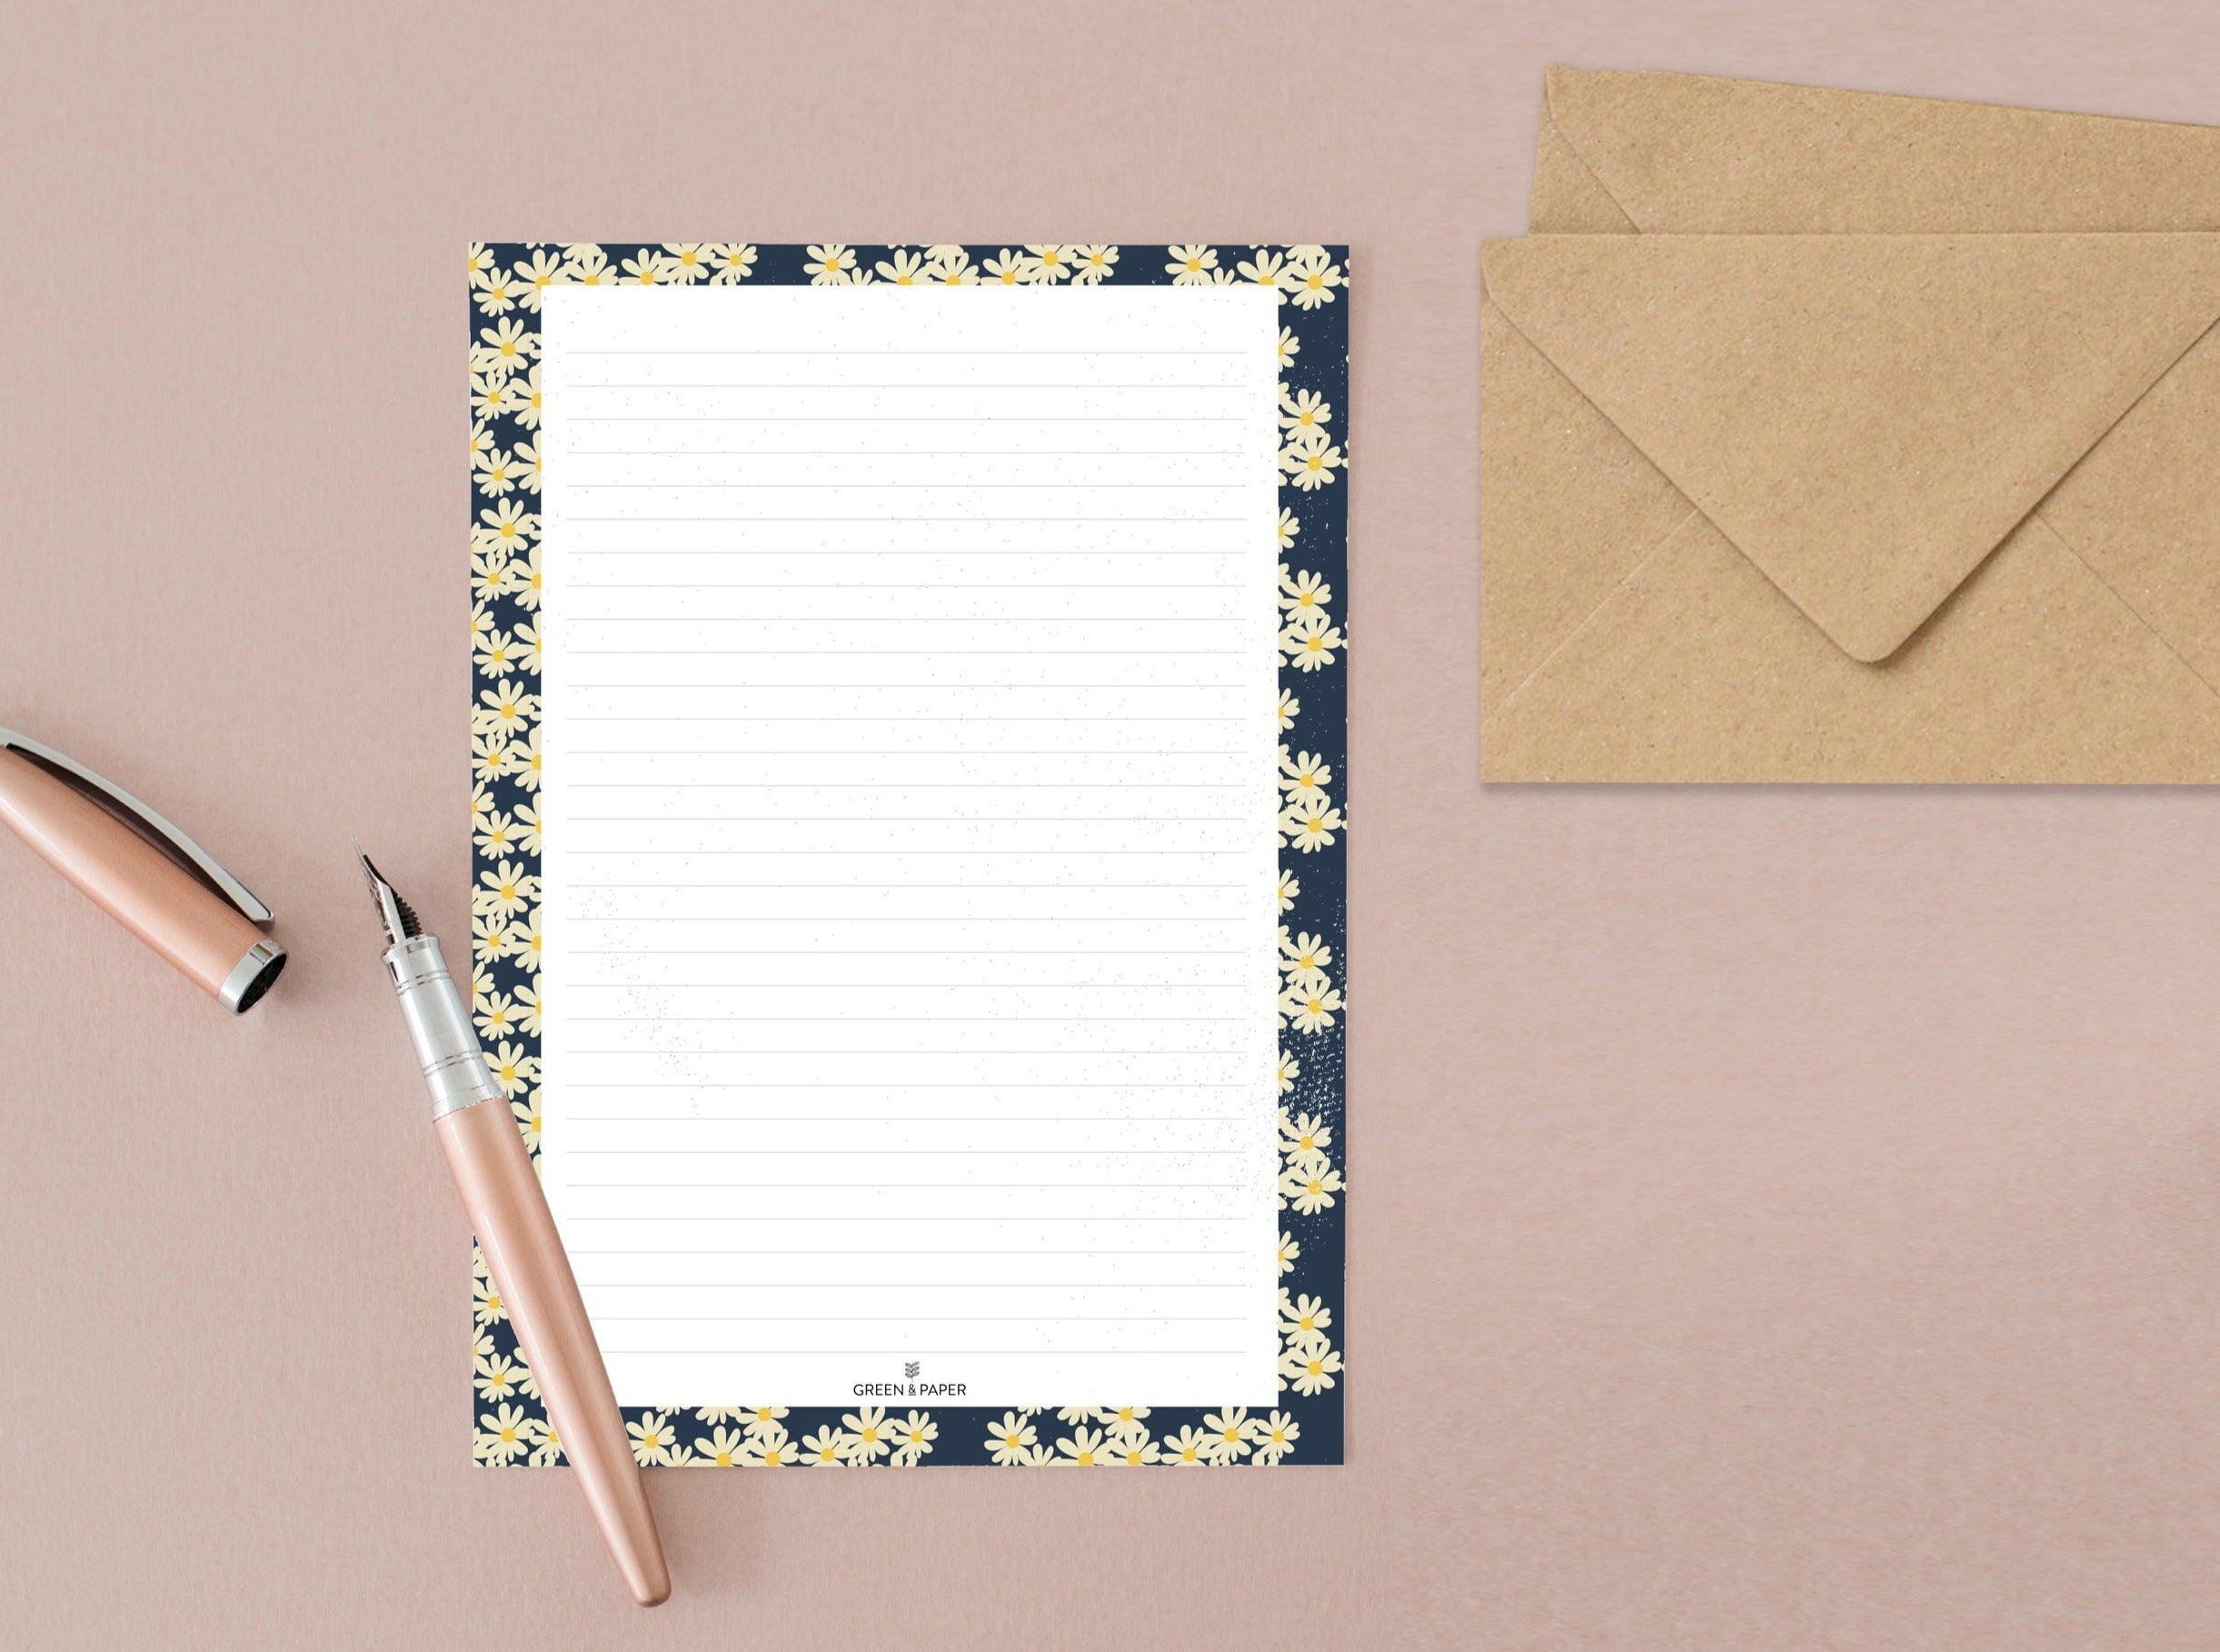 Papiers à lettre fleurs bleu marine – Green and Paper